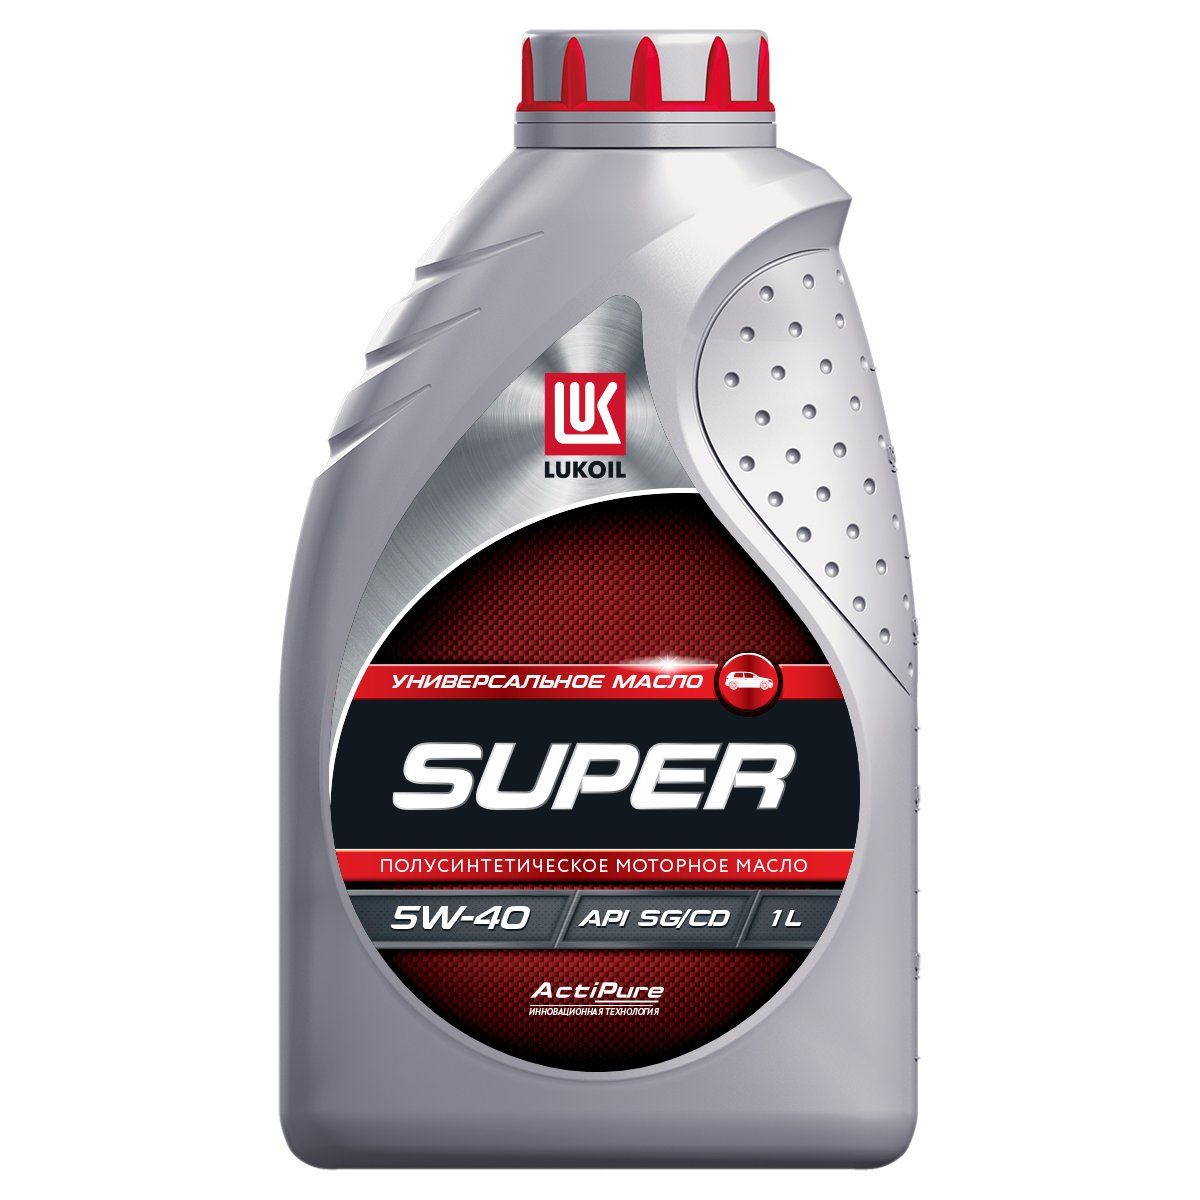 Моторное масло Lukoil супер SG/CD 5W40 1л